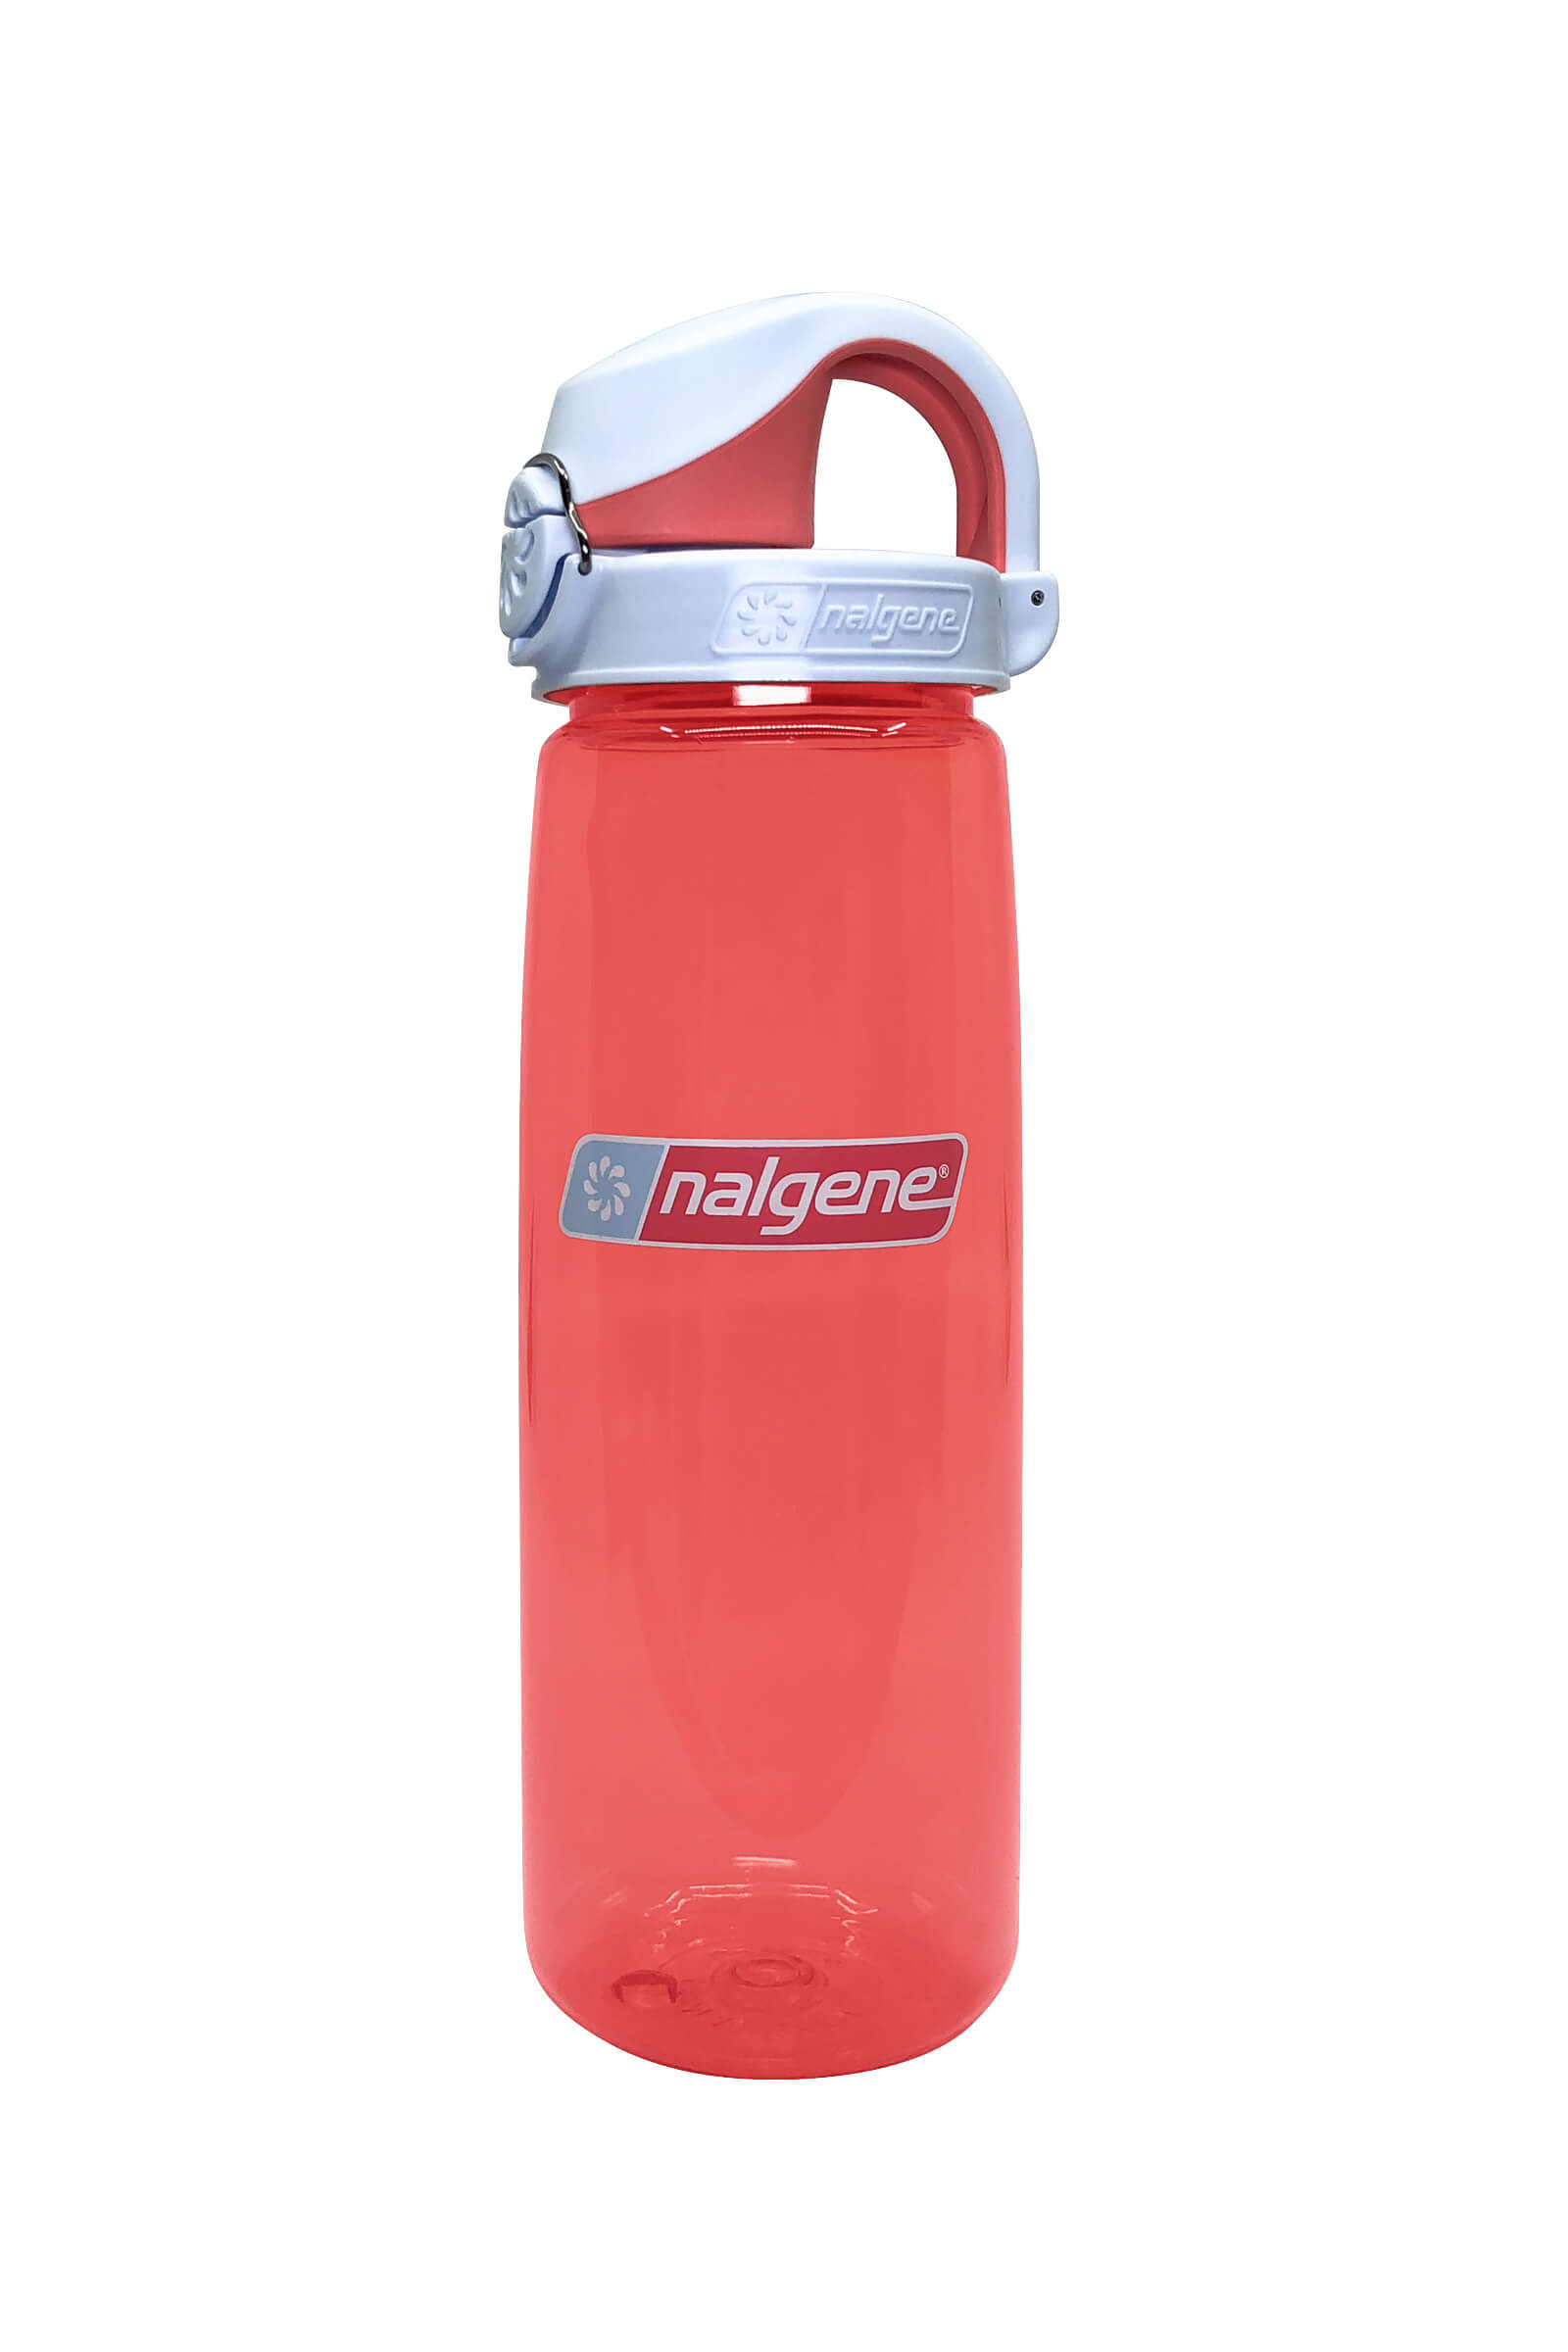 Nalgene 24oz On-The-Fly Lock-Top Bottle Fire Red & White Top BPA/BPS Free 